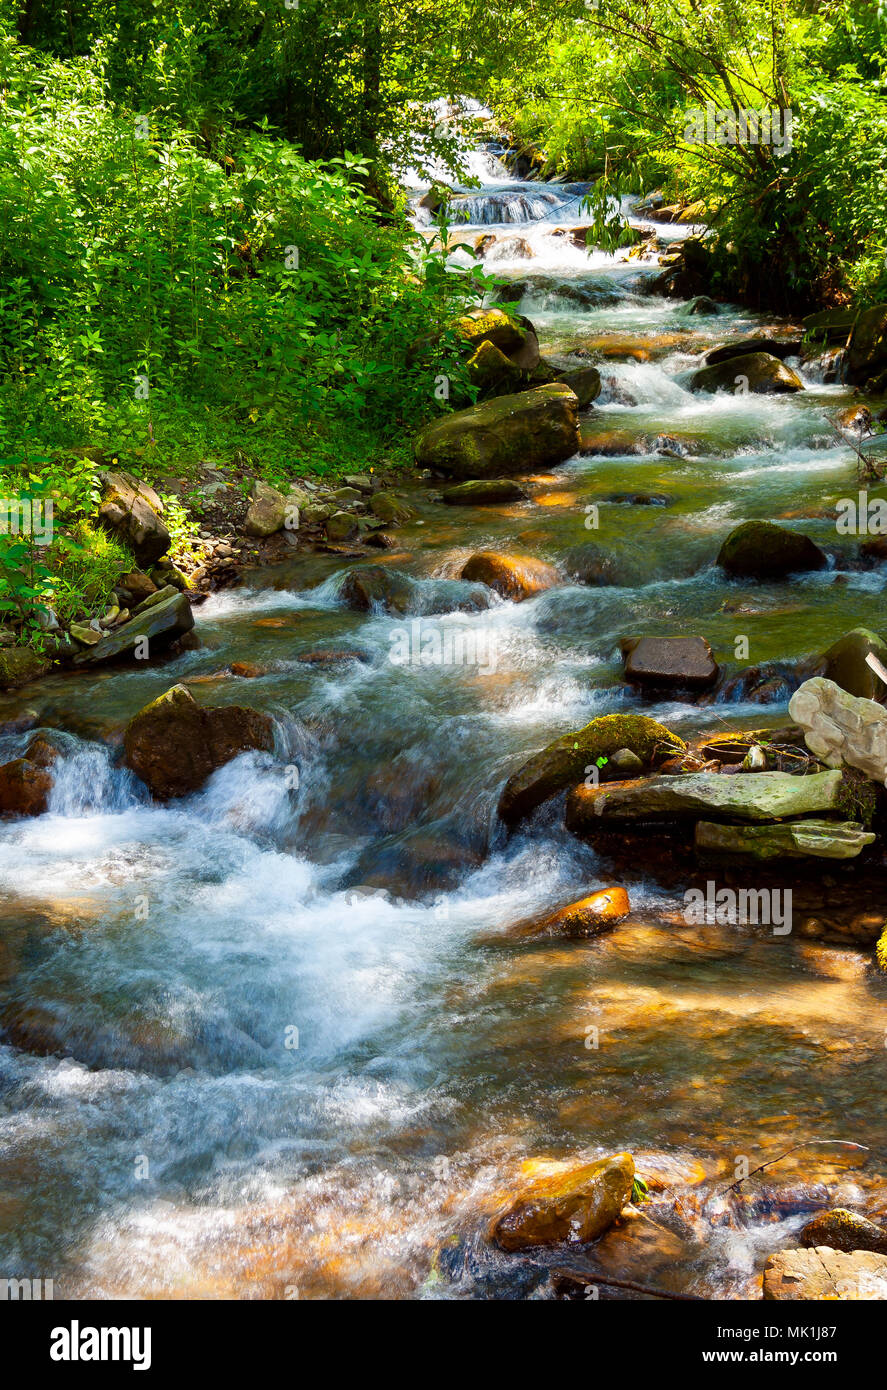 La pequeña corriente de agua en días soleados de verano encantador escenario natural. Foto de stock